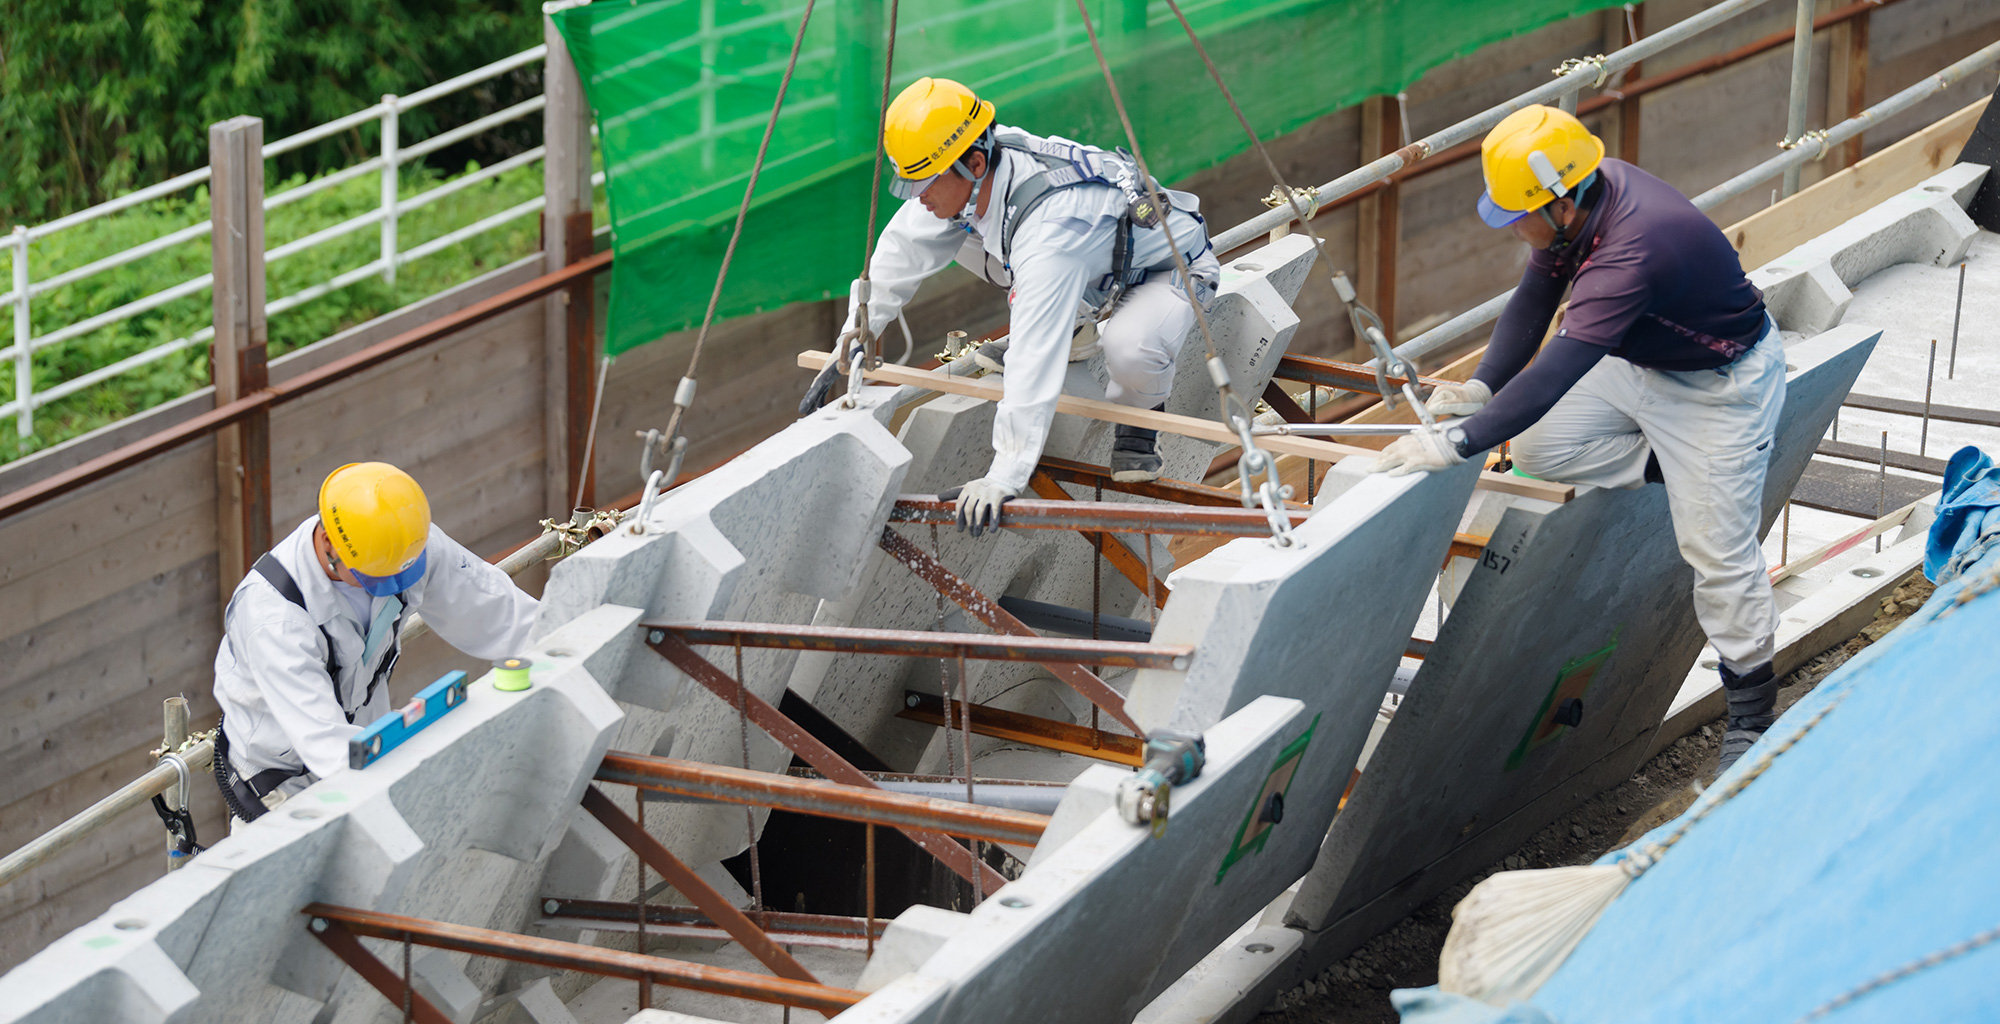 佐久間建設は地元勝浦の道路・交差点や復旧工事など、公共工事を担っております。